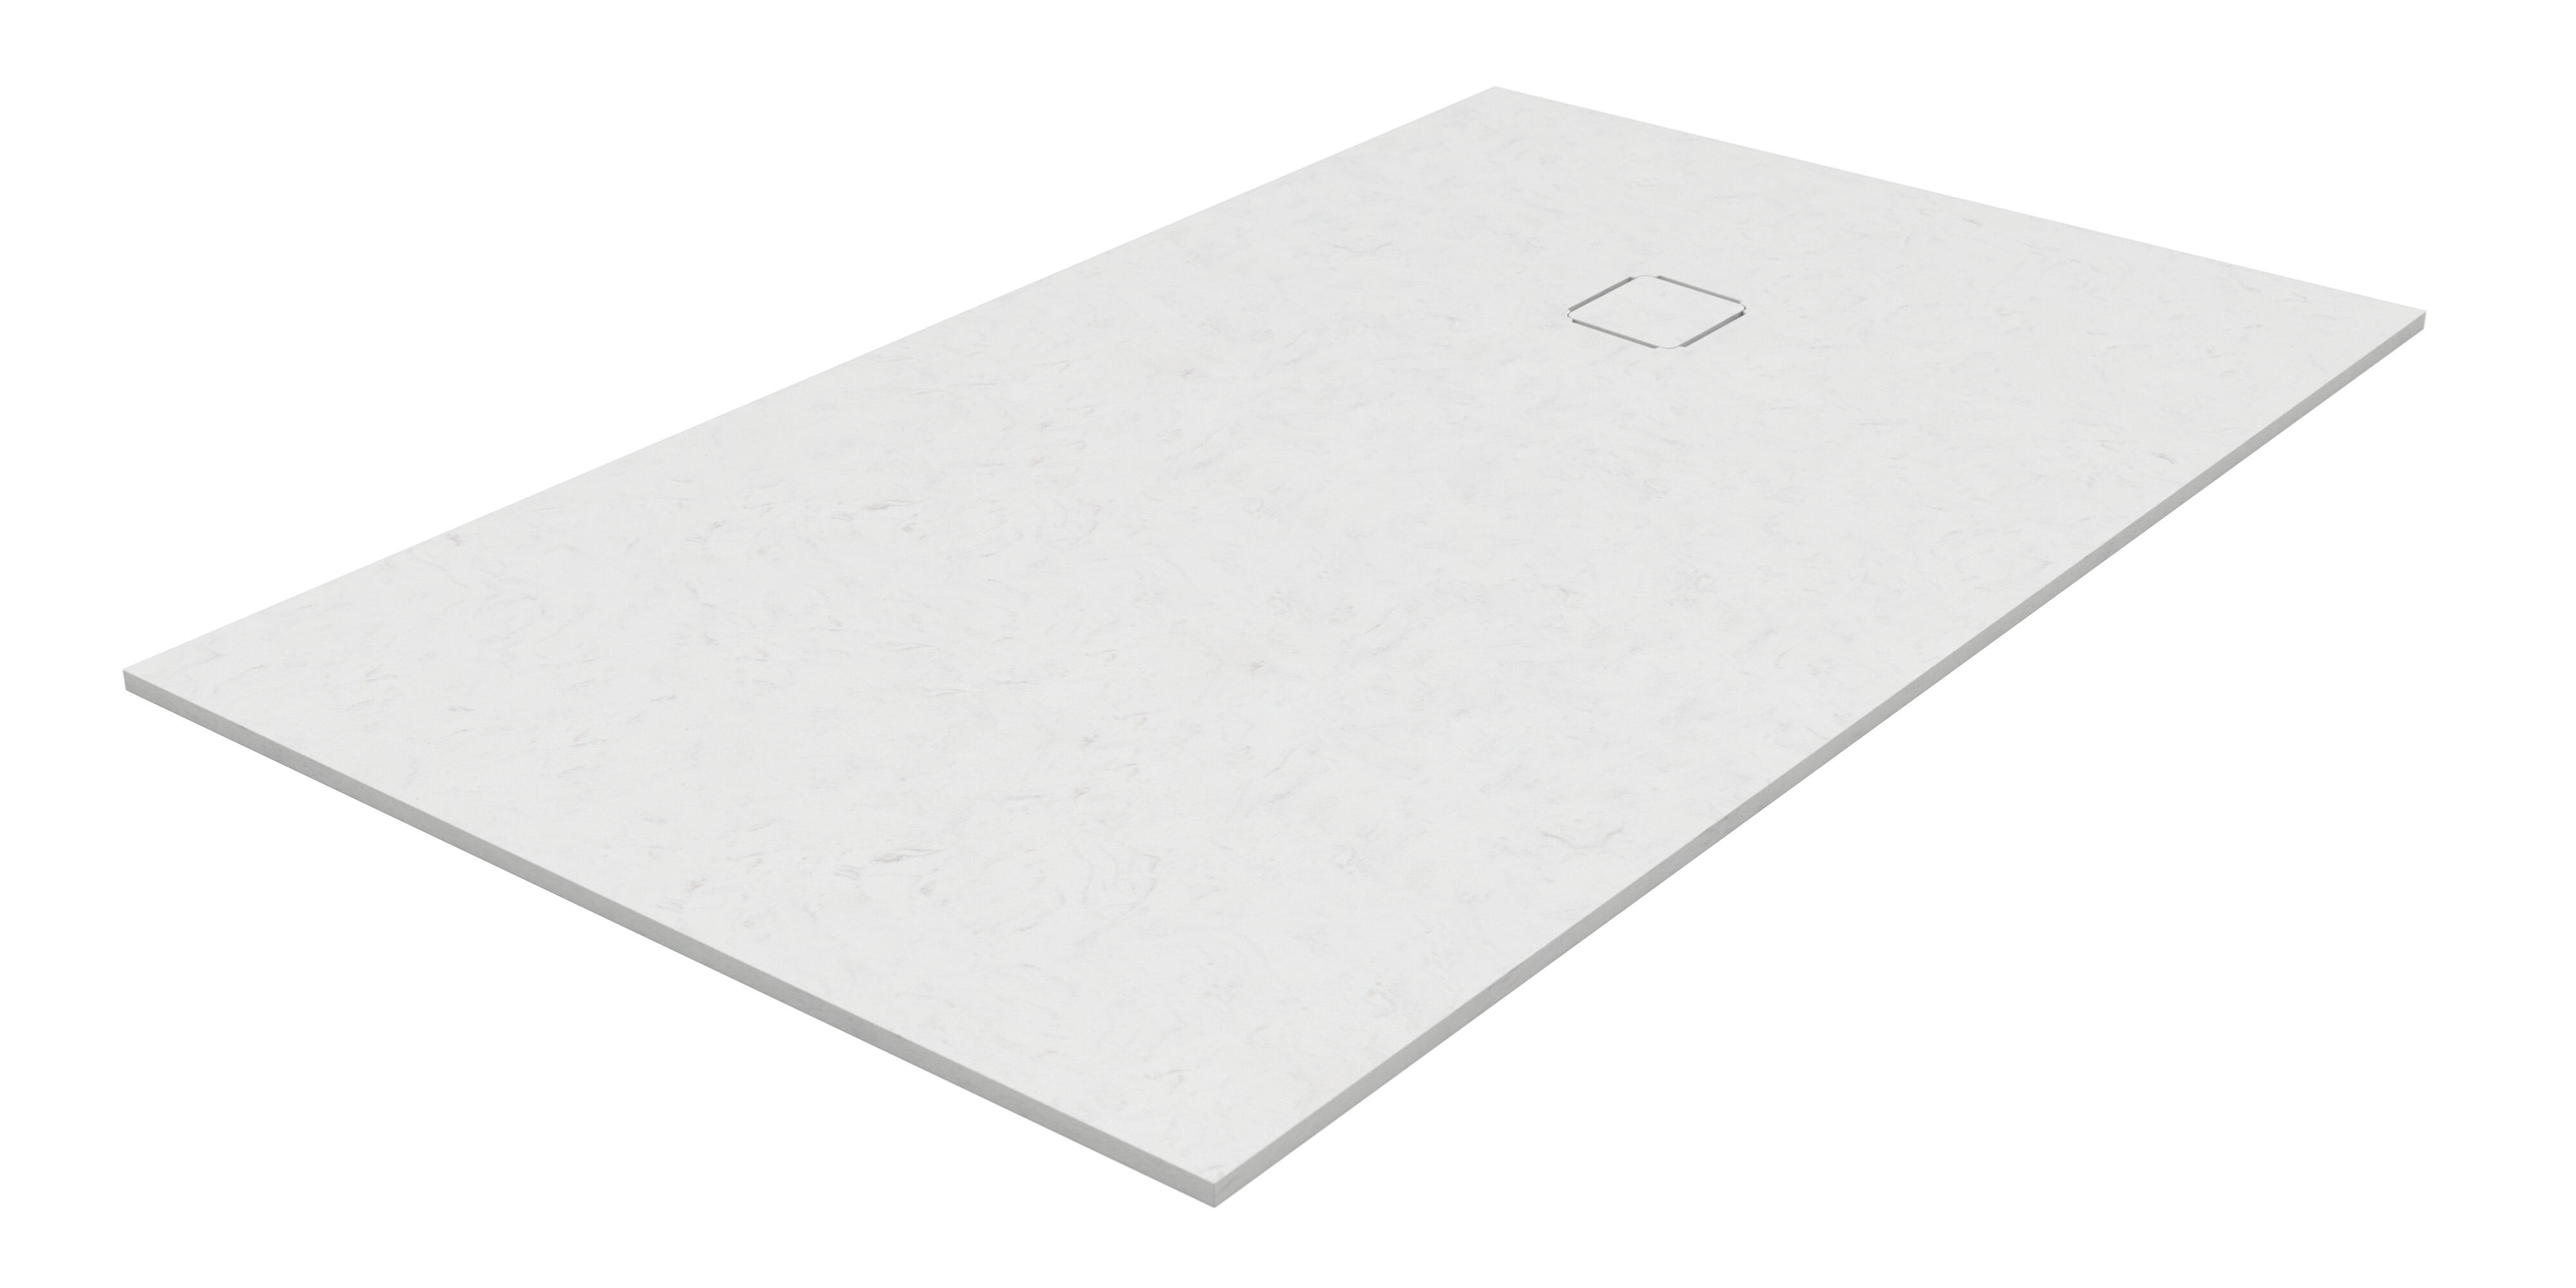 Plato de ducha kue 100x80 cm blanco